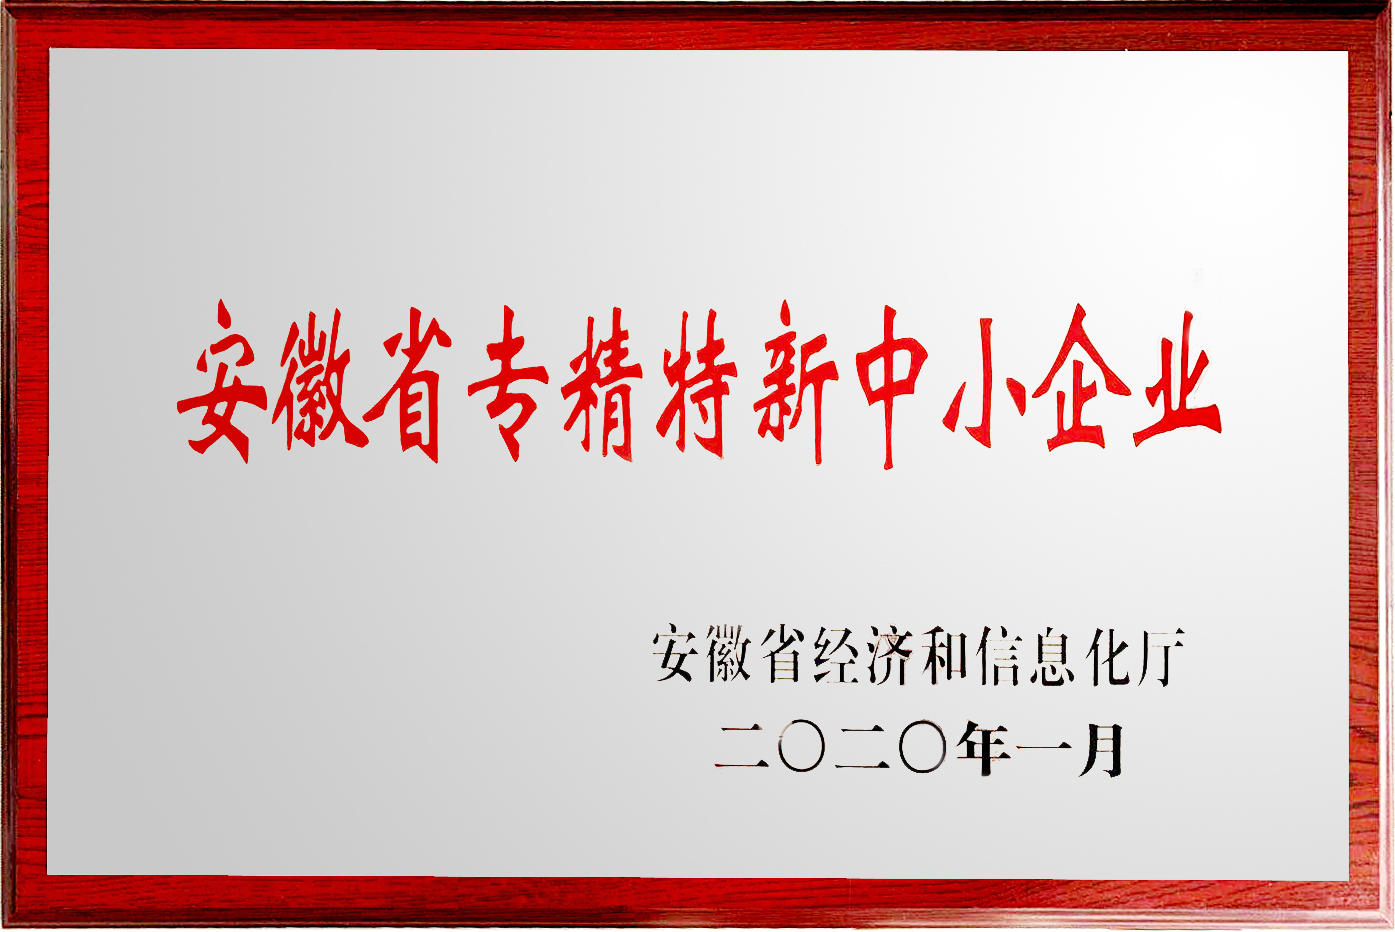 【喜讯】热烈祝贺我公司被授予 “安徽省专精特新中小企业”荣誉称号